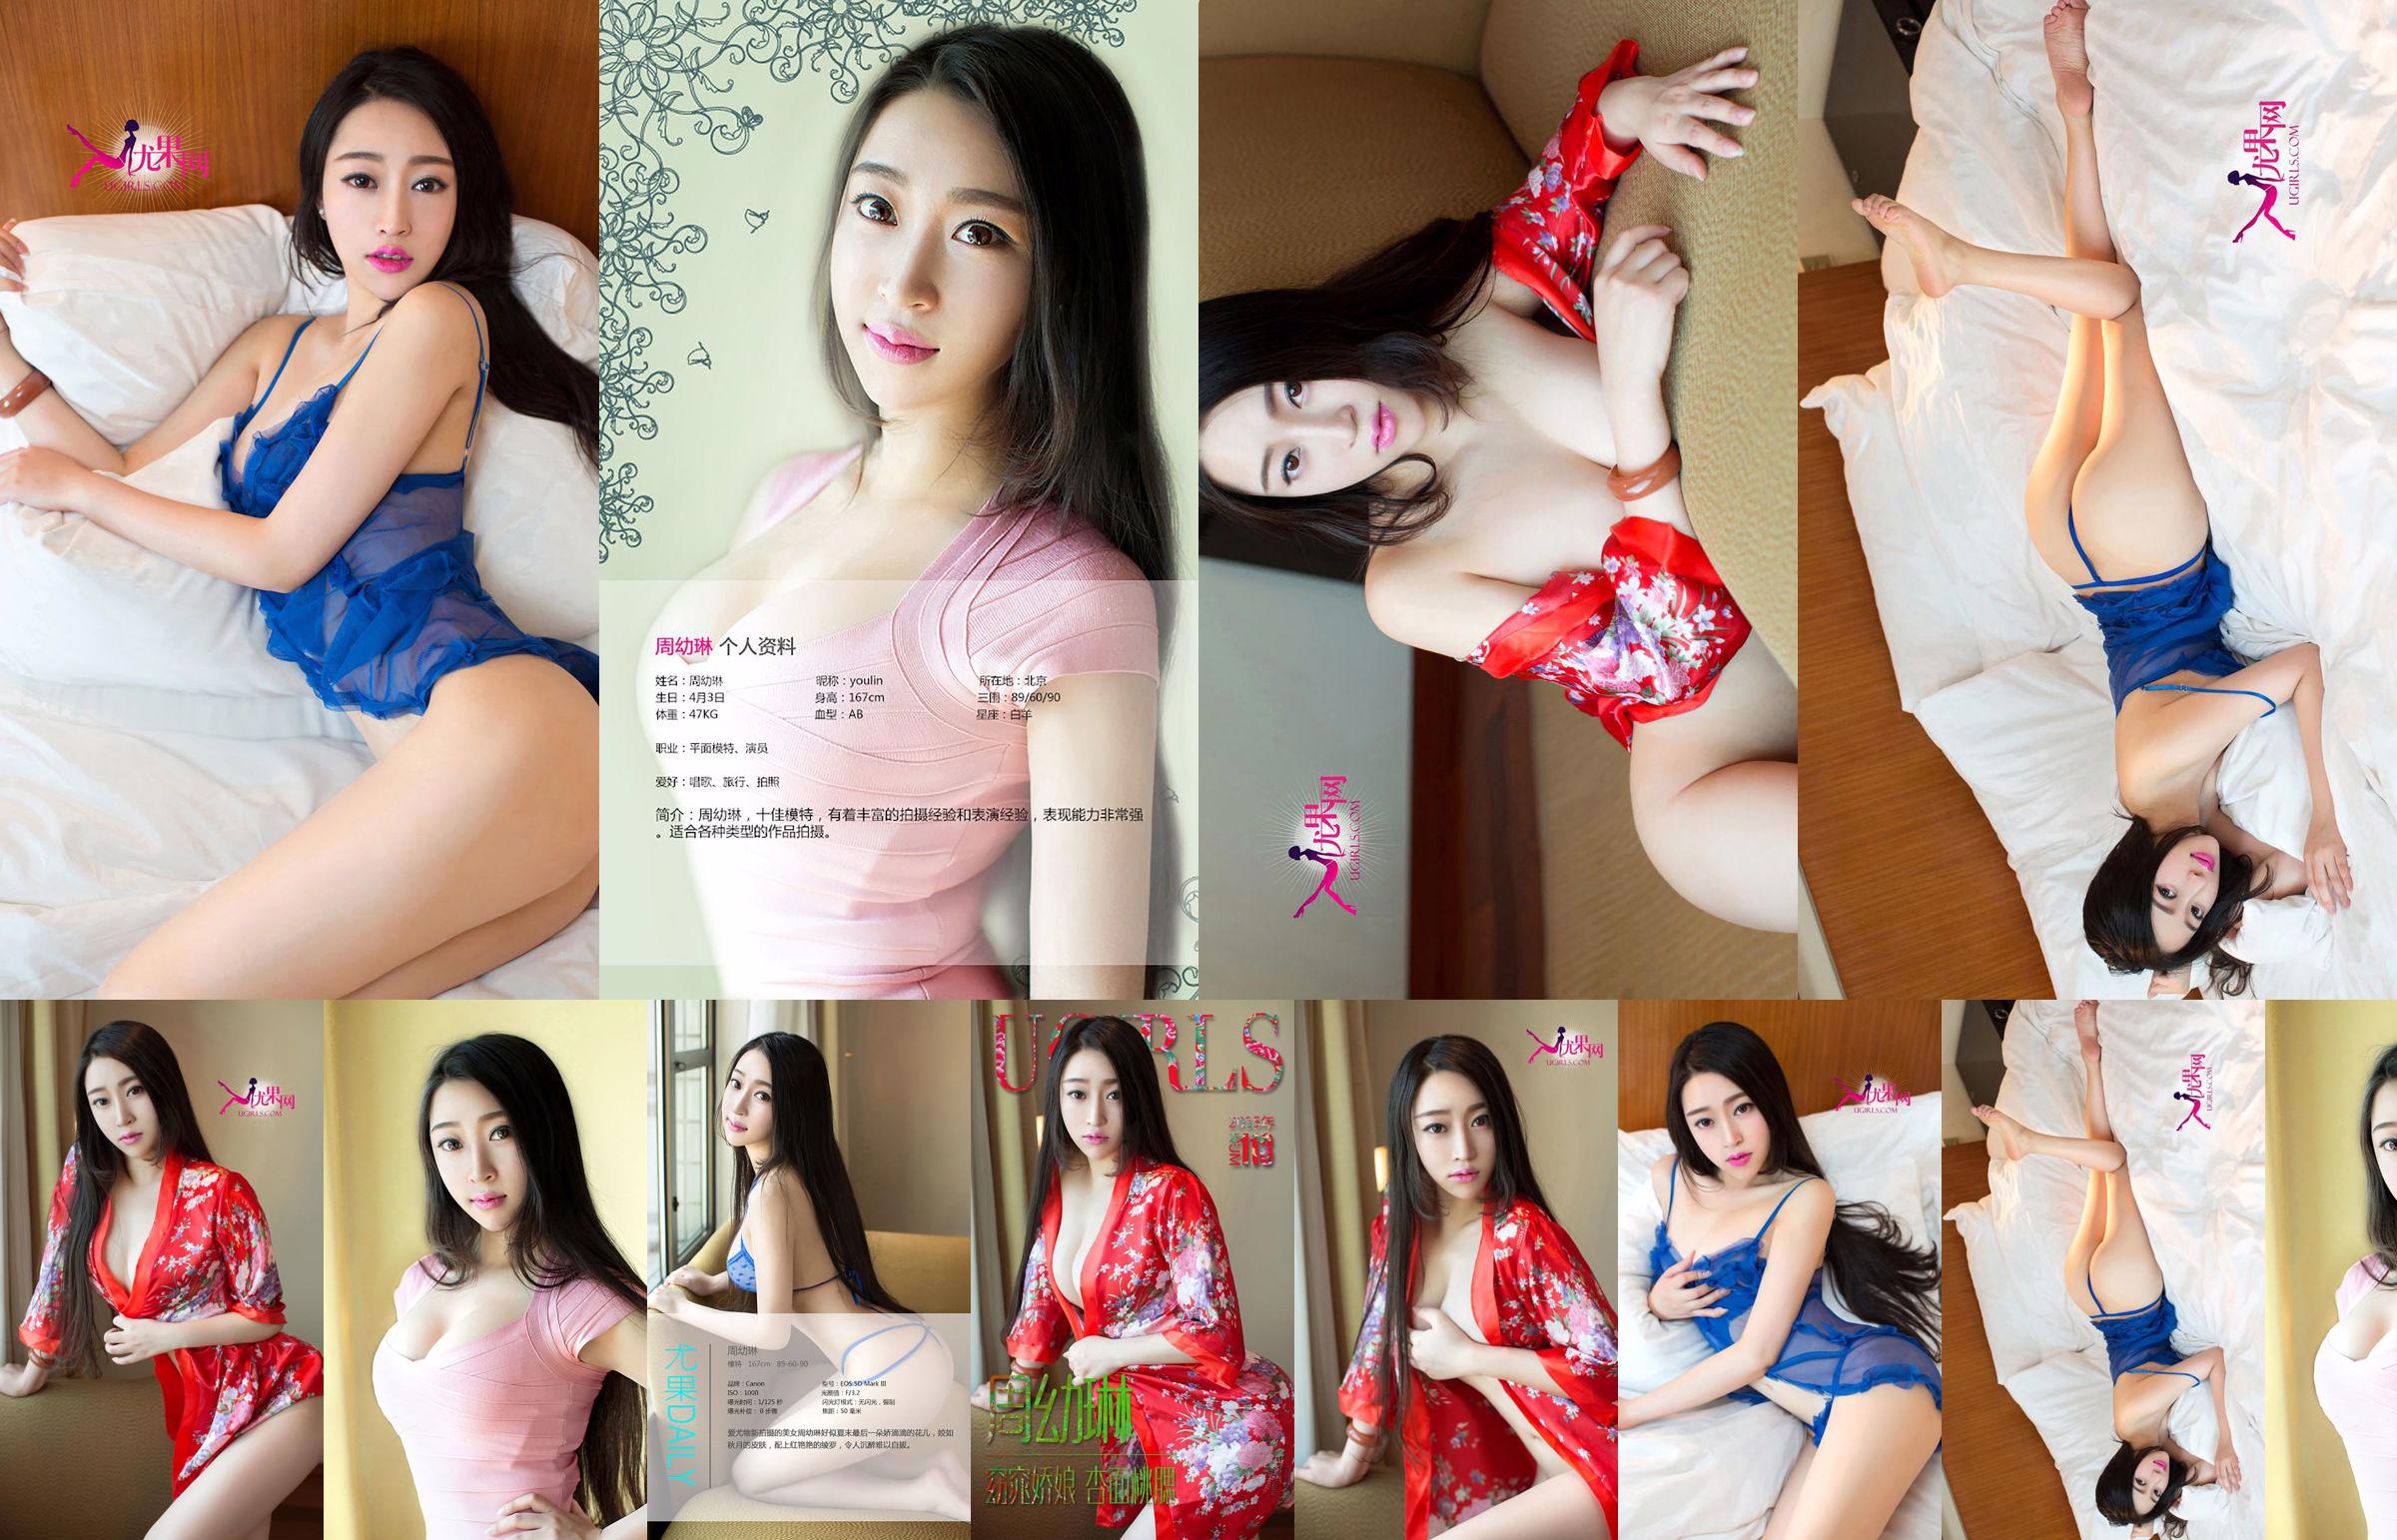 Zhou Youlin "Une belle fille avec un visage abricot et des joues de pêche" [Love Youwu Ugirls] No.113 No.4a892d Page 1